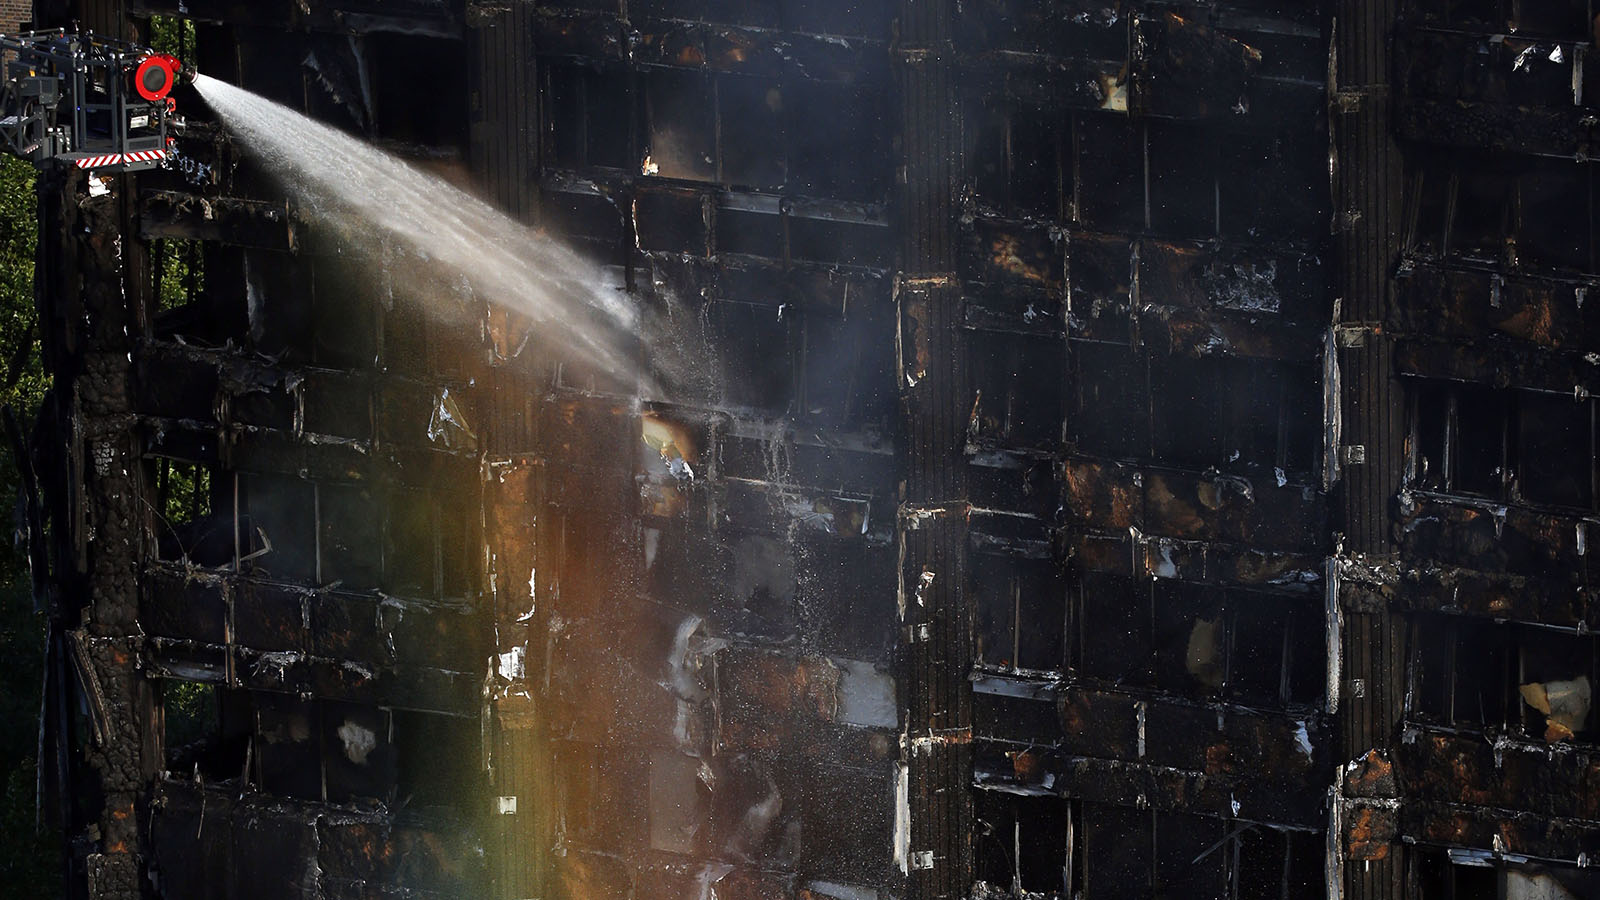 כוחות הכיבוי במאמץ לכבות את השריפה בלונדון (AP Photo/Alastair Grant)